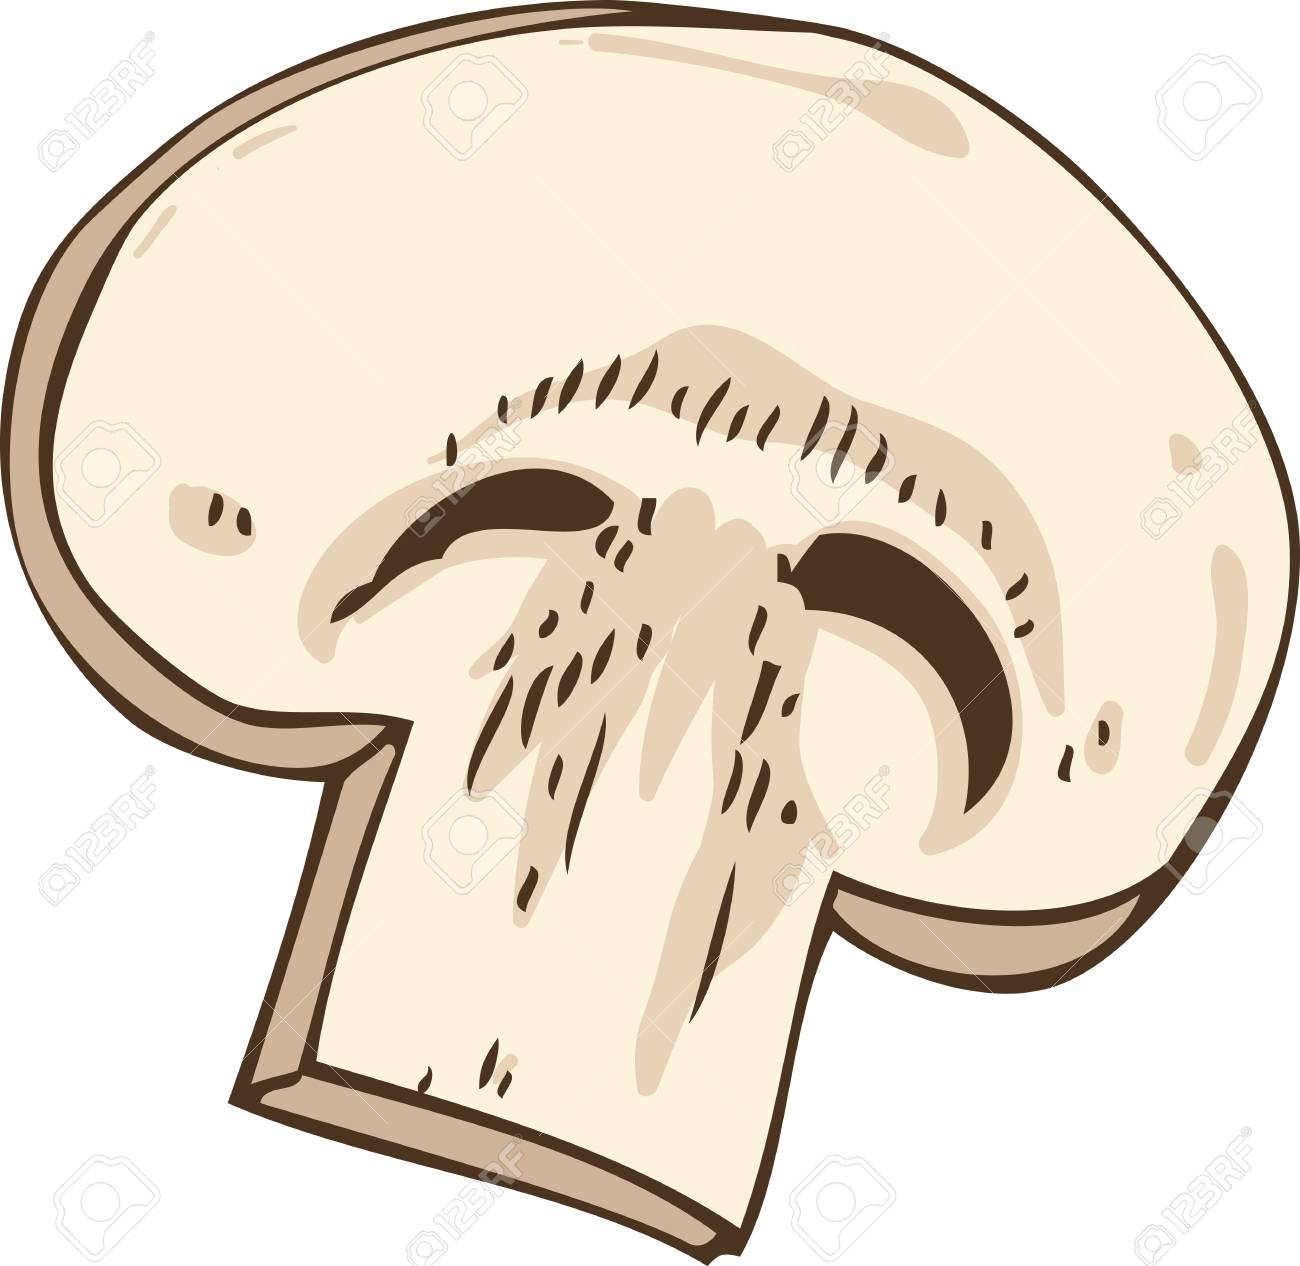 Mushroom Slice Illustration